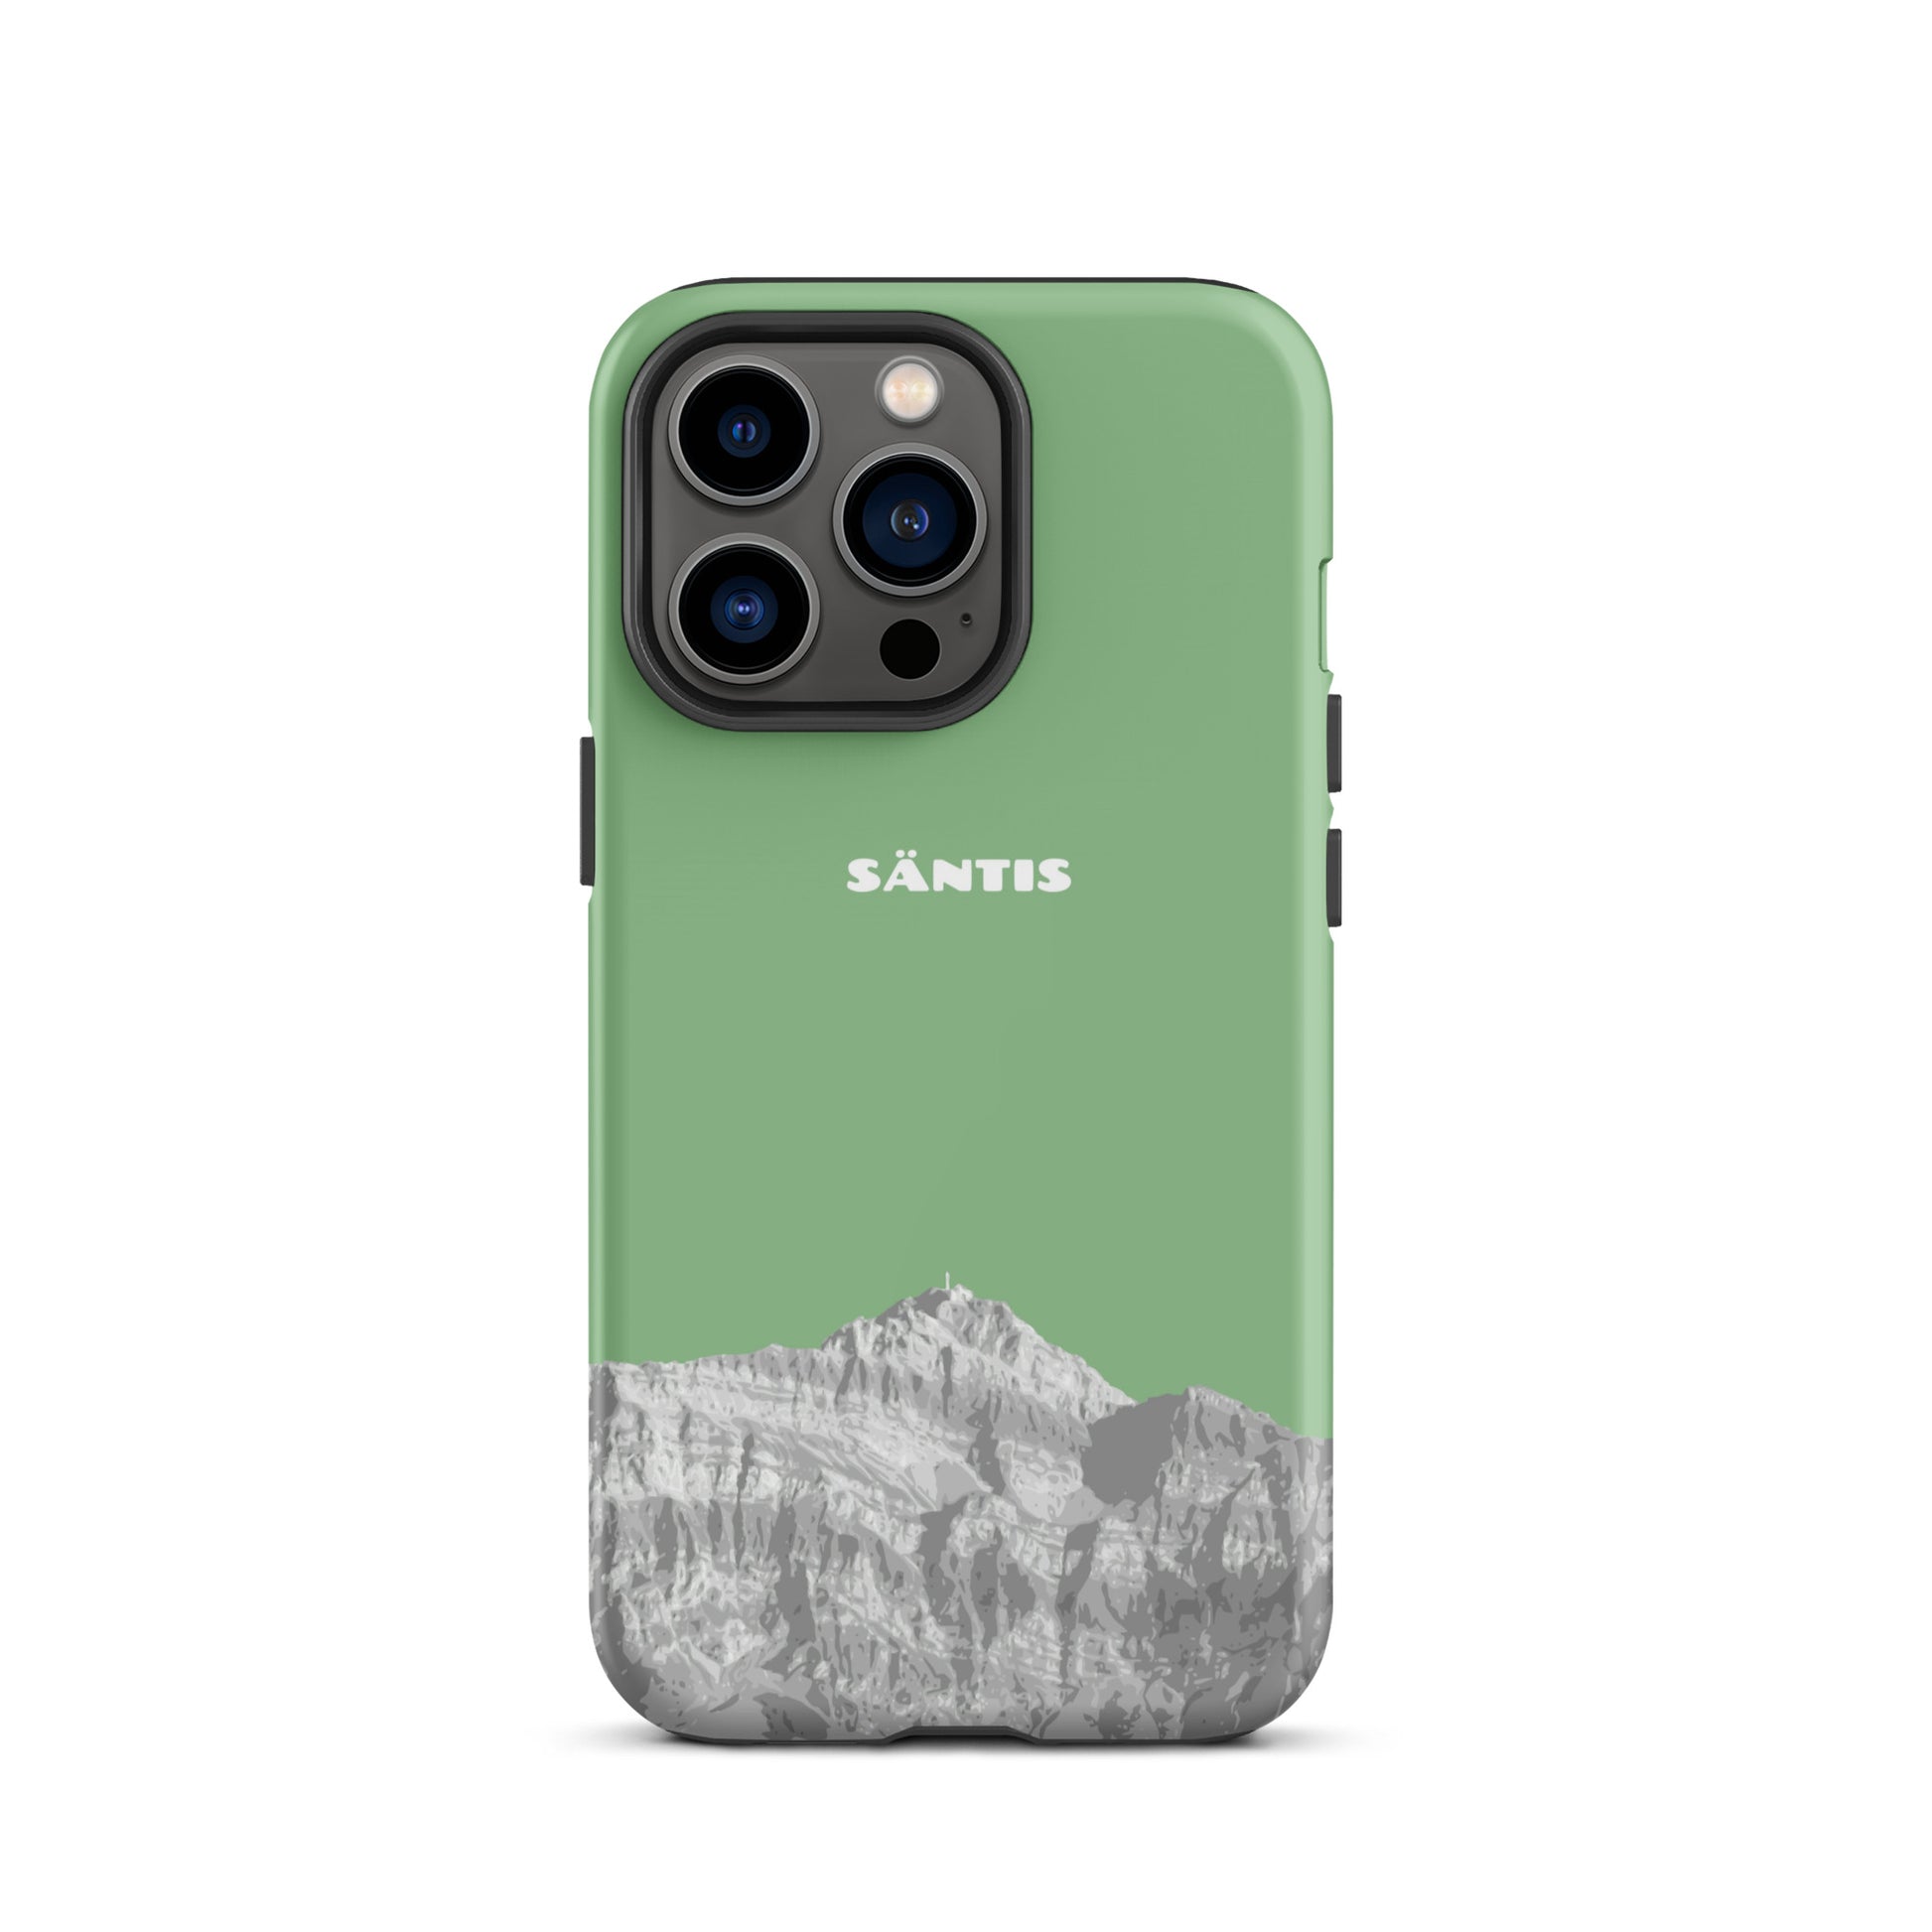 Hülle für das iPhone 13 Pro von Apple in der Farbe Hellgrün, dass den Säntis im Alpstein zeigt.